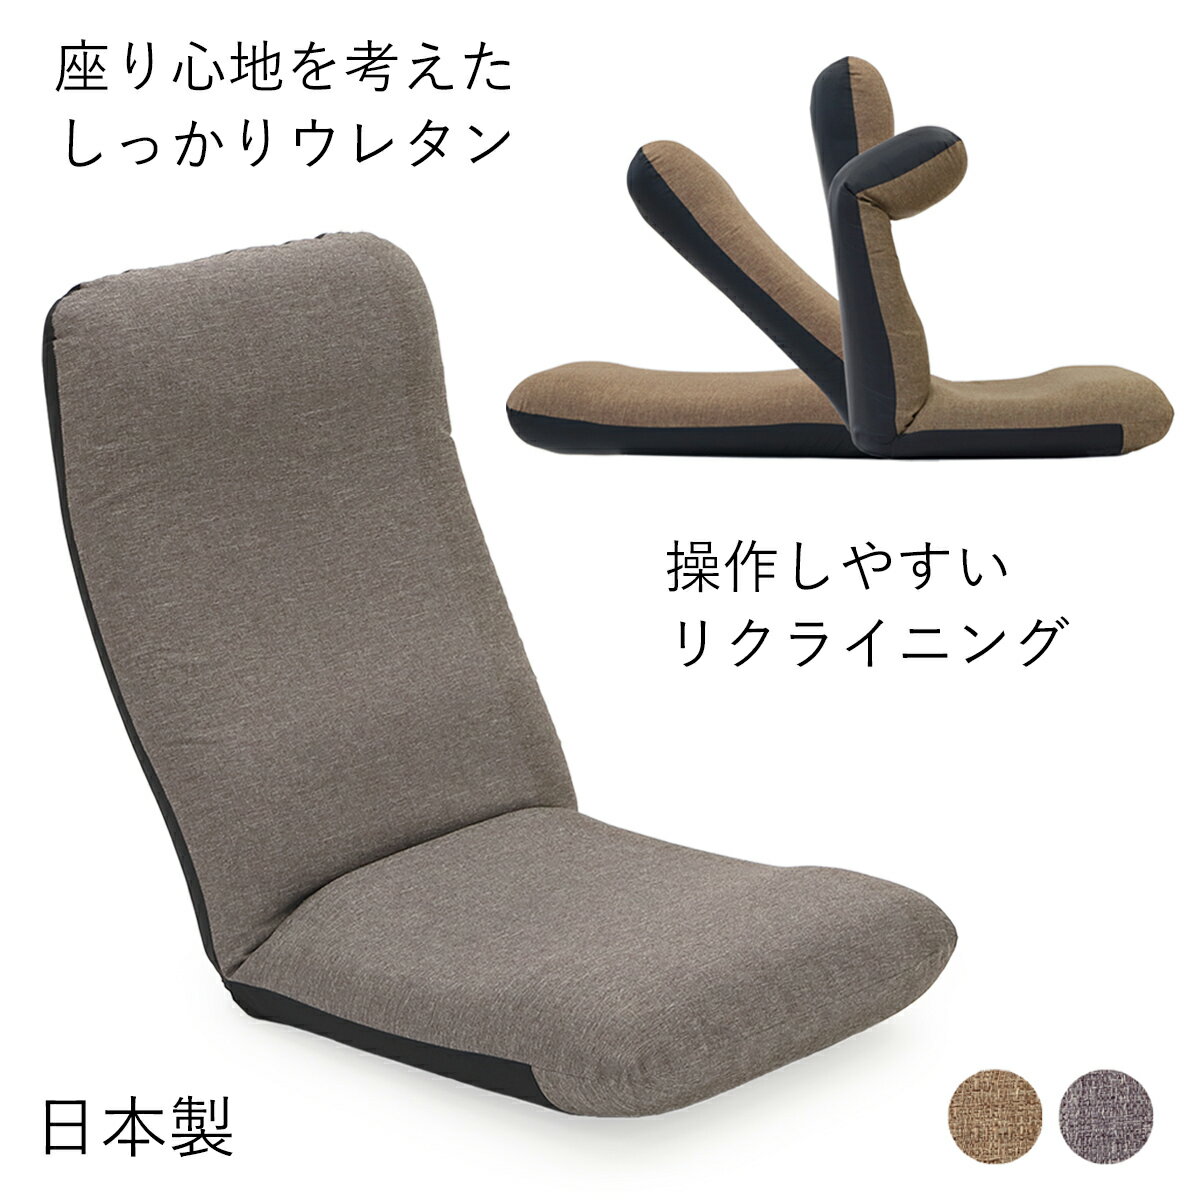 腰をいたわる ヘッドリクライニング座椅子3 (ヤマザキ)【 座椅子 ざいす 座いす リクライニング 日本製 座椅子カバー 姿勢 ヘッドリクライニング ハイバック】のサムネイル